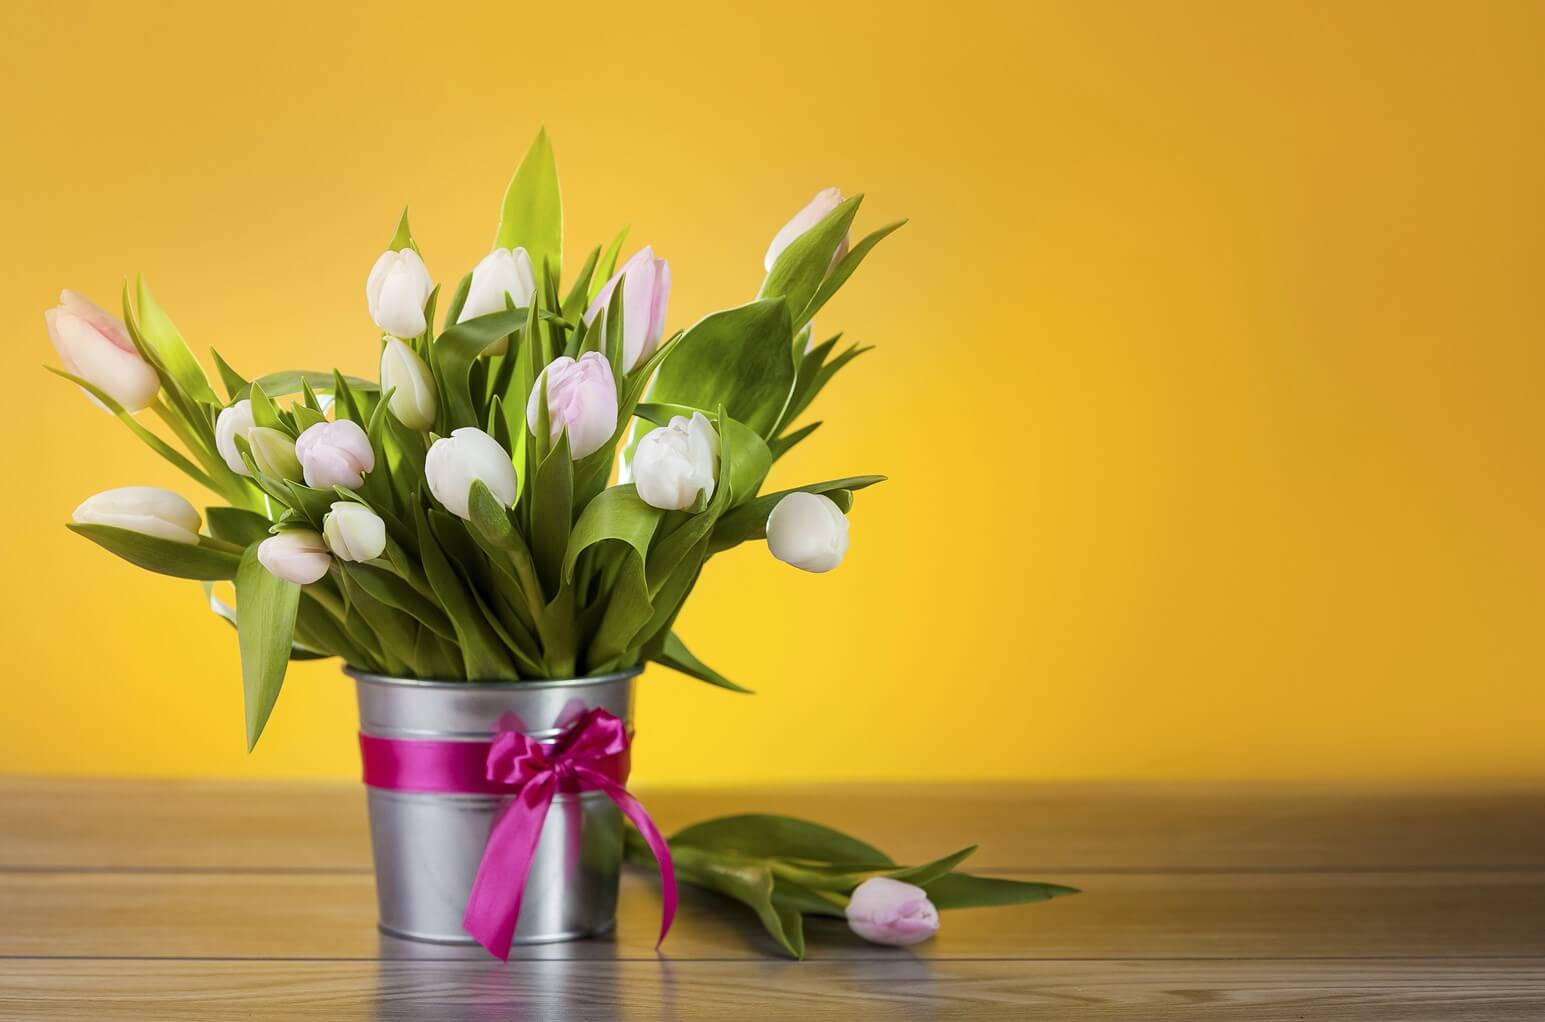 Атон поздравляет с прекрасным праздником весны – Международным женским днем!